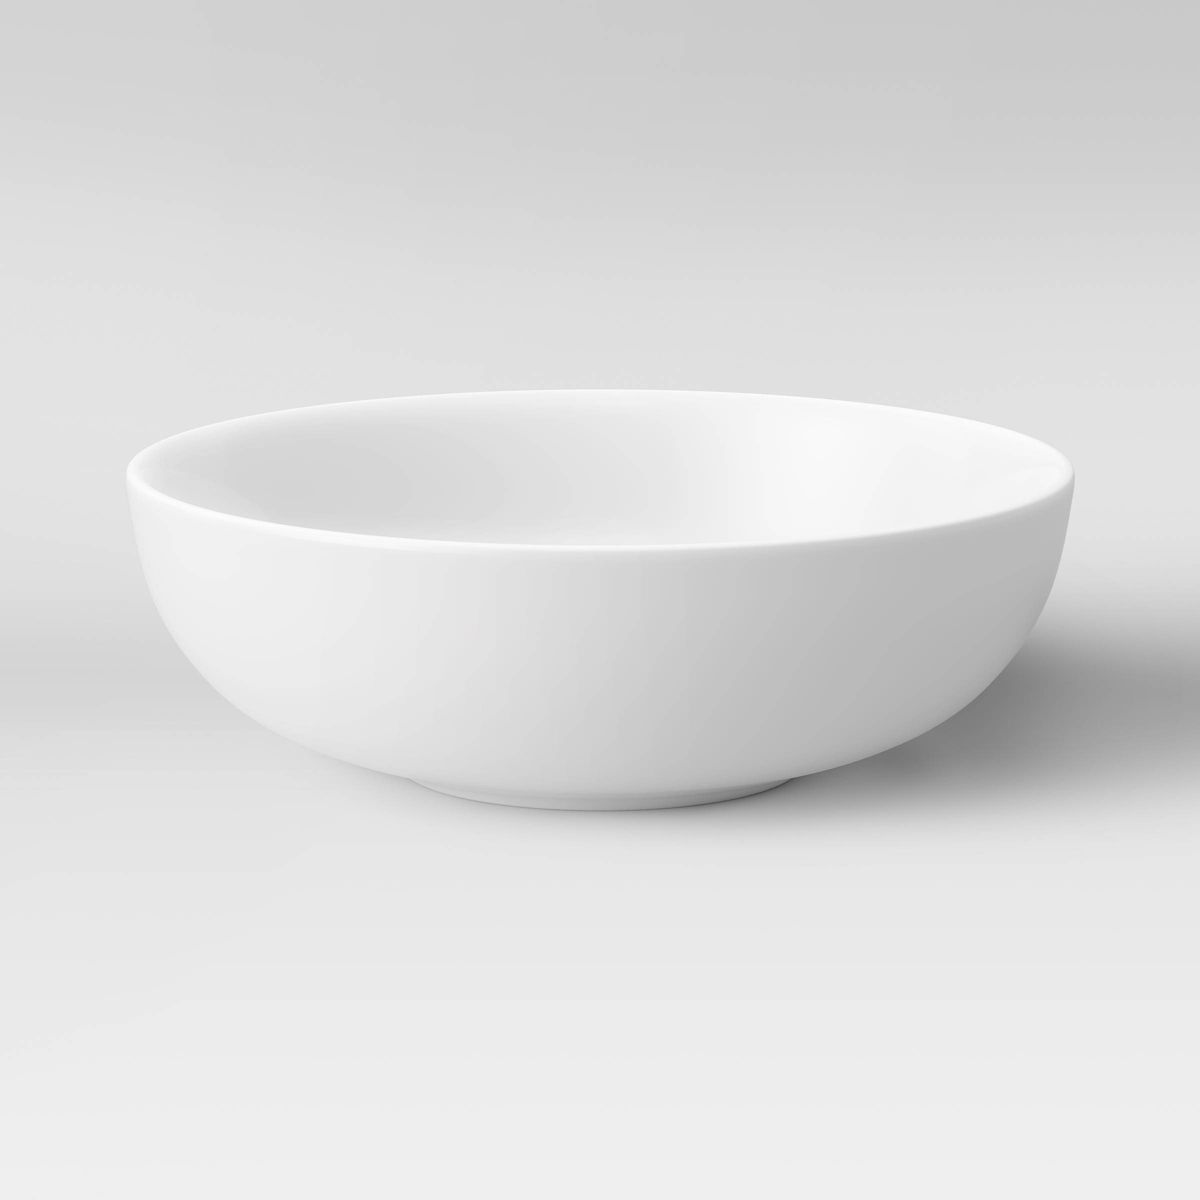 48oz Porcelain Serving Bowl White - Threshold™ | Target